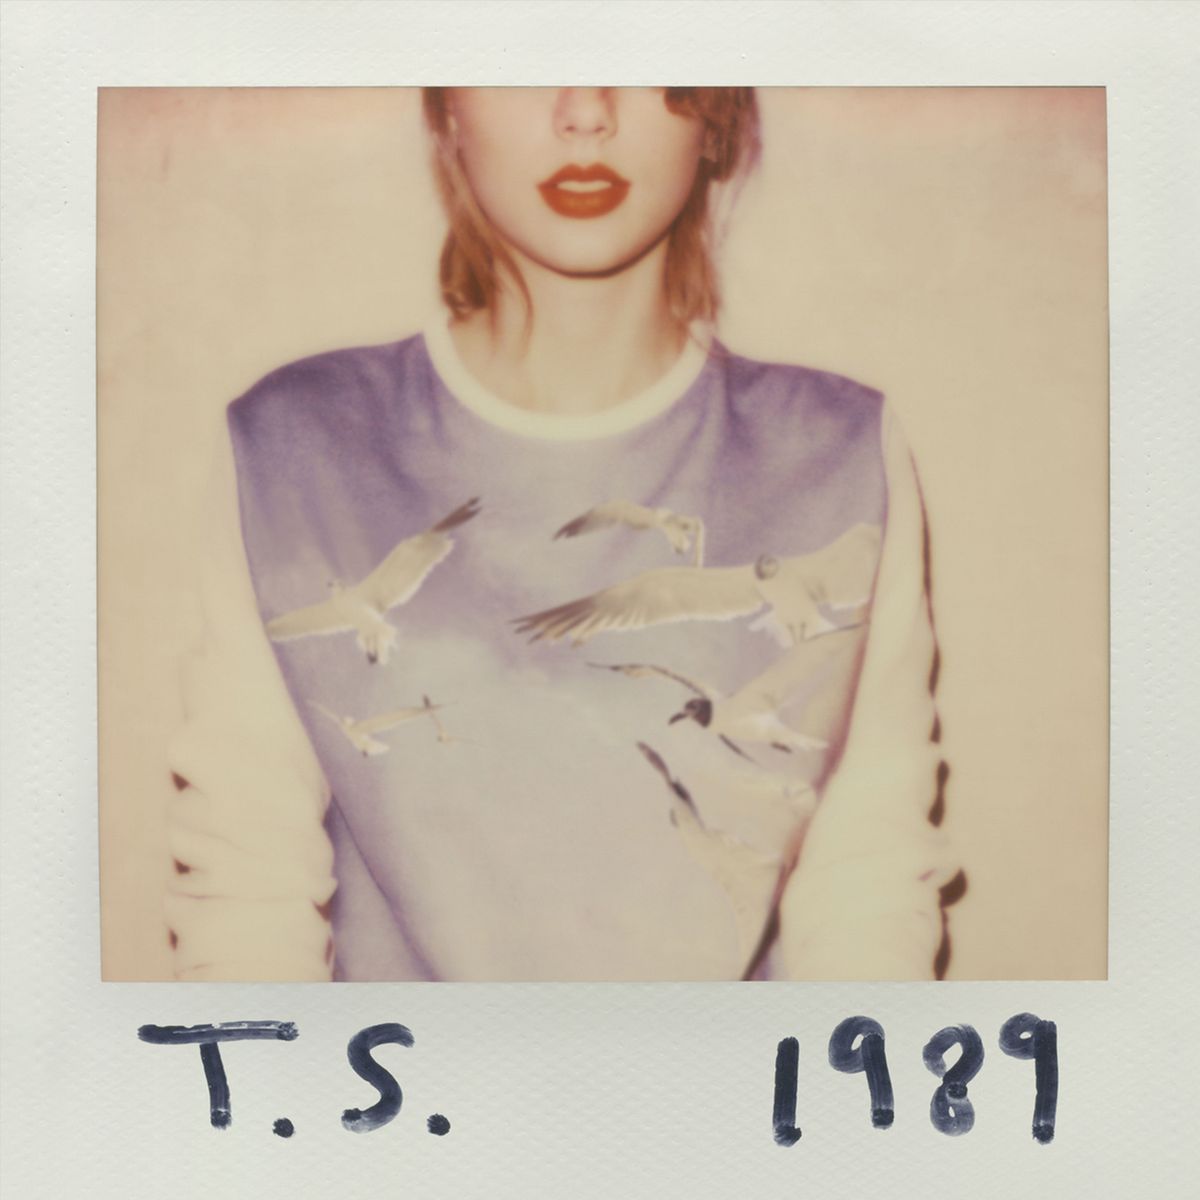 Couverture de 1989 montrant un Polaroid de Taylor Swift, rogné au niveau des yeux